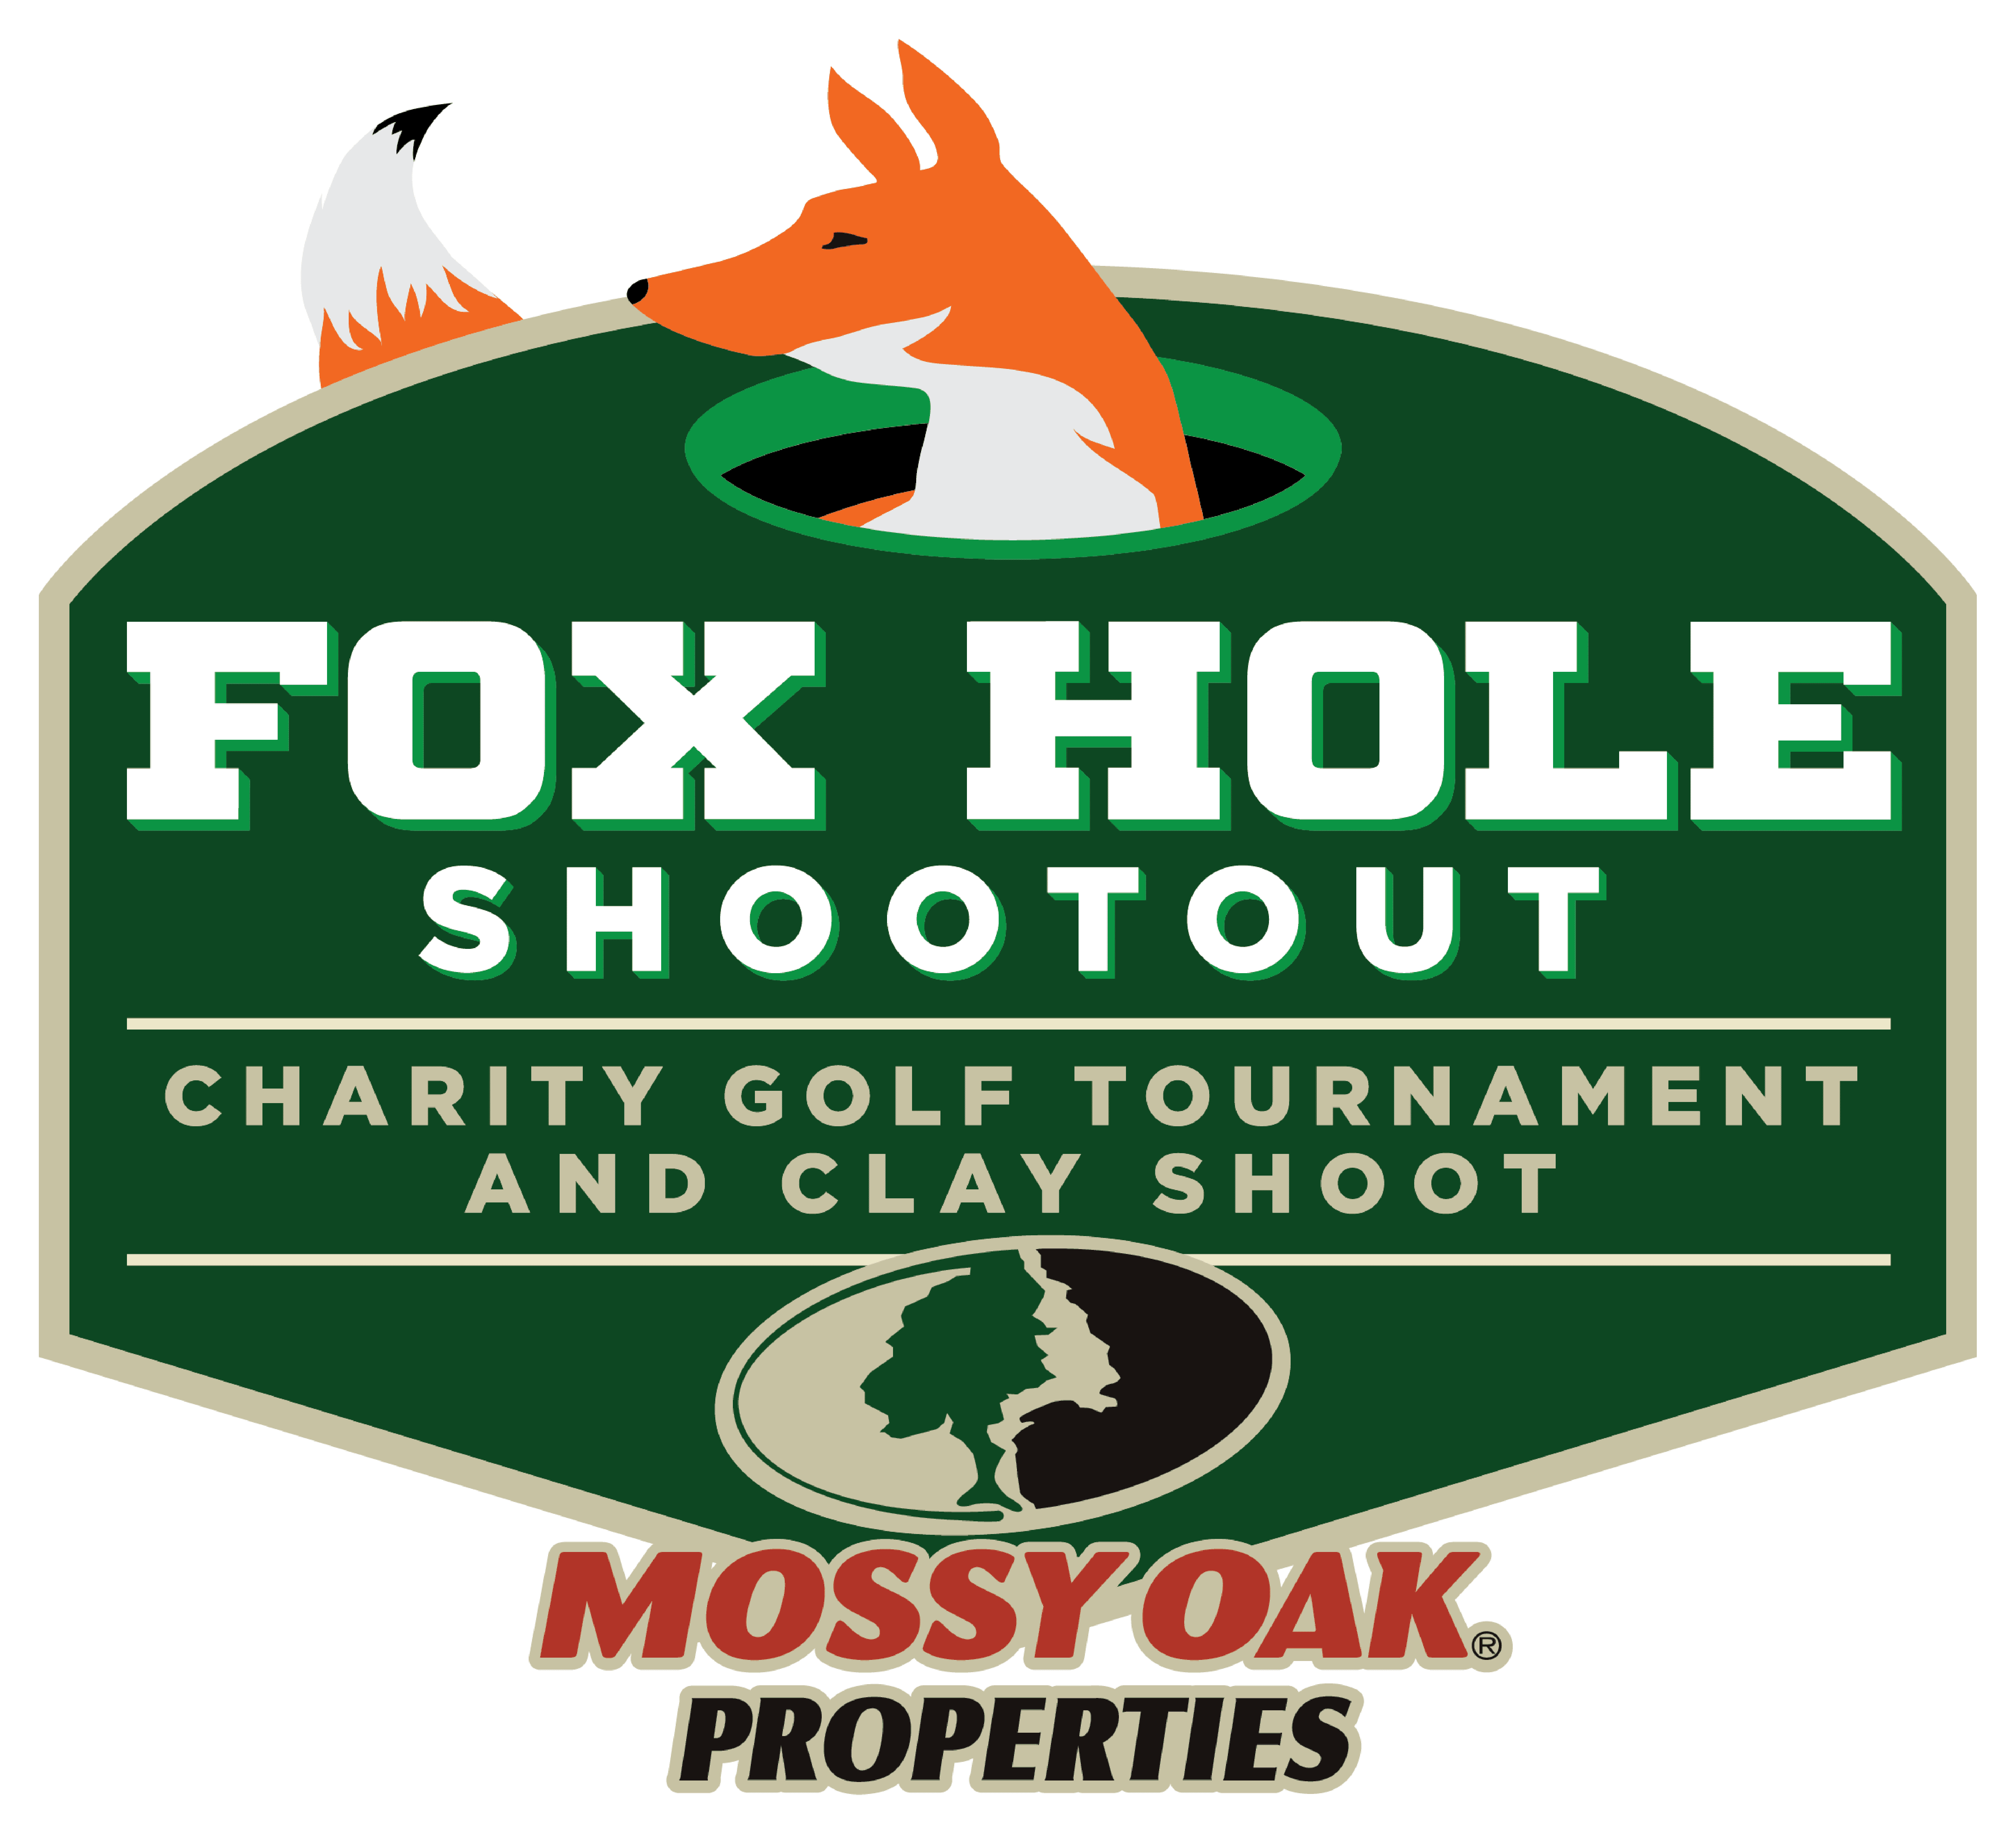 Mossy Oak Properties’ Fox Hole Shootout